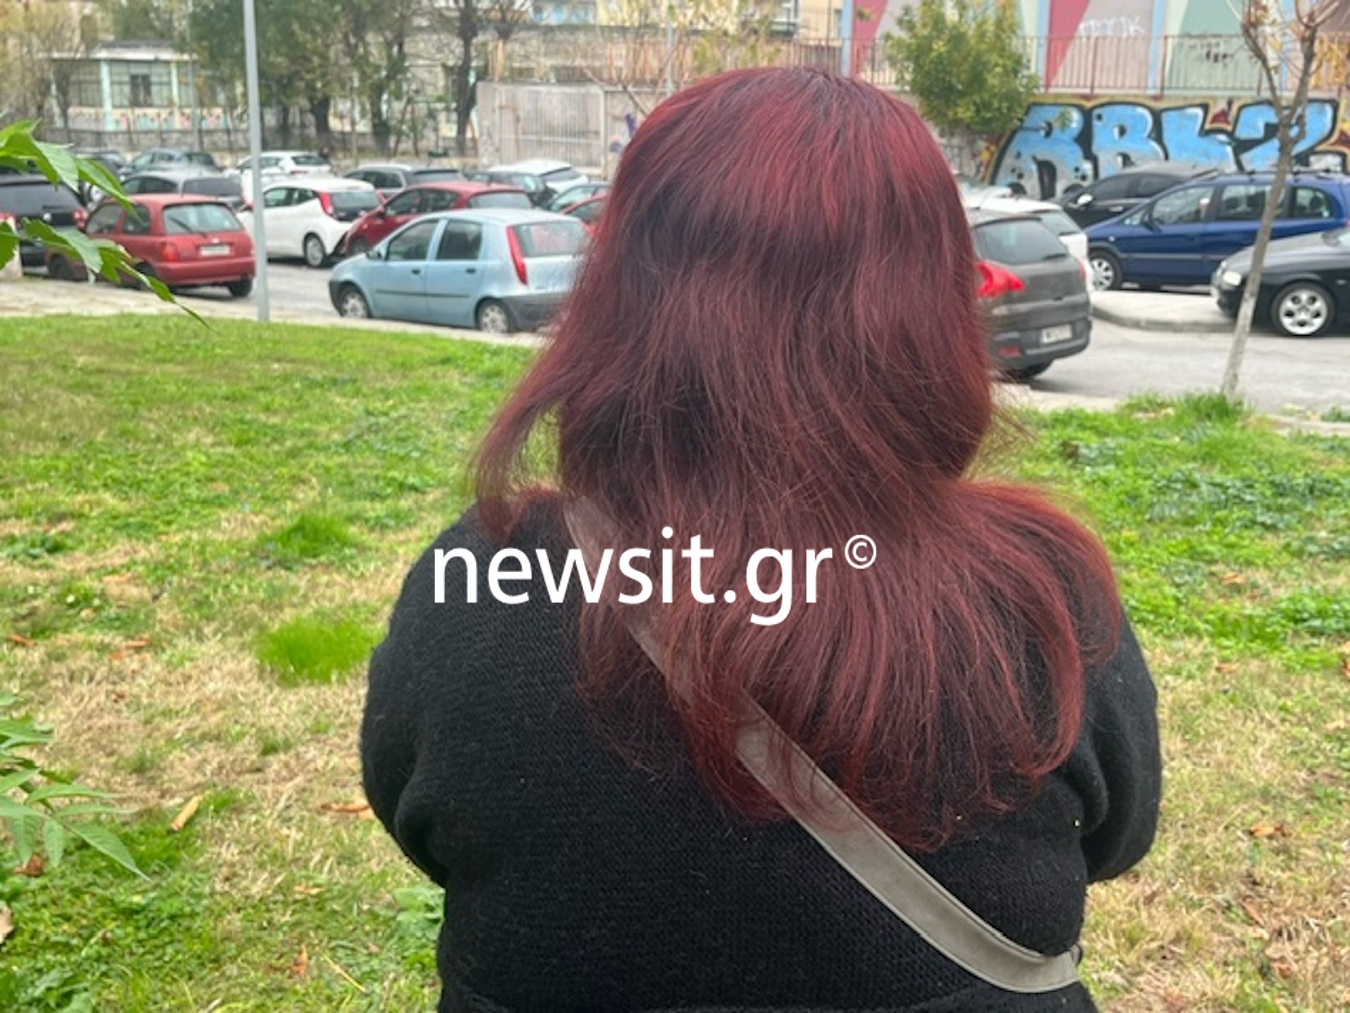 Θεσσαλονίκη: «Με χτυπούσε με μπουνιές στο κεφάλι έξω από το σχολείο της κόρη μας» λέει η 41χρονη στο newsit.gr